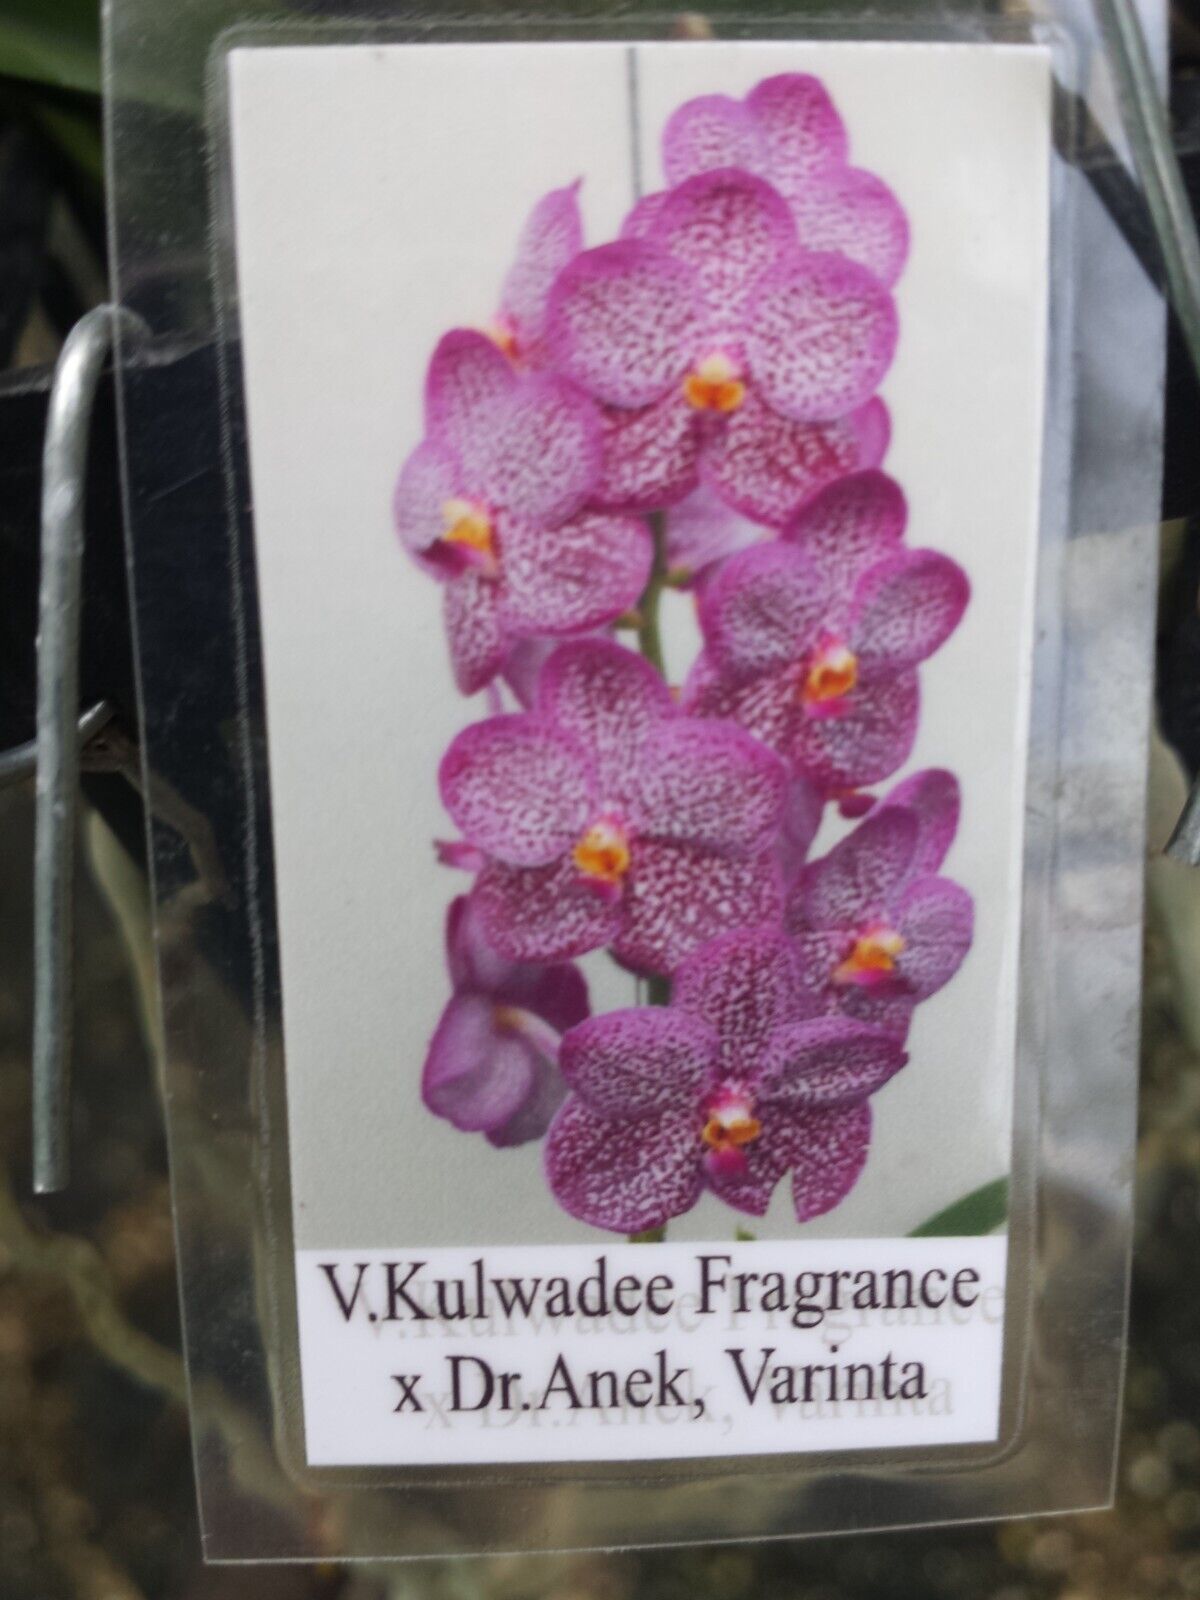 Orchid Vanda Kulwadee Fragrance 3 Pack